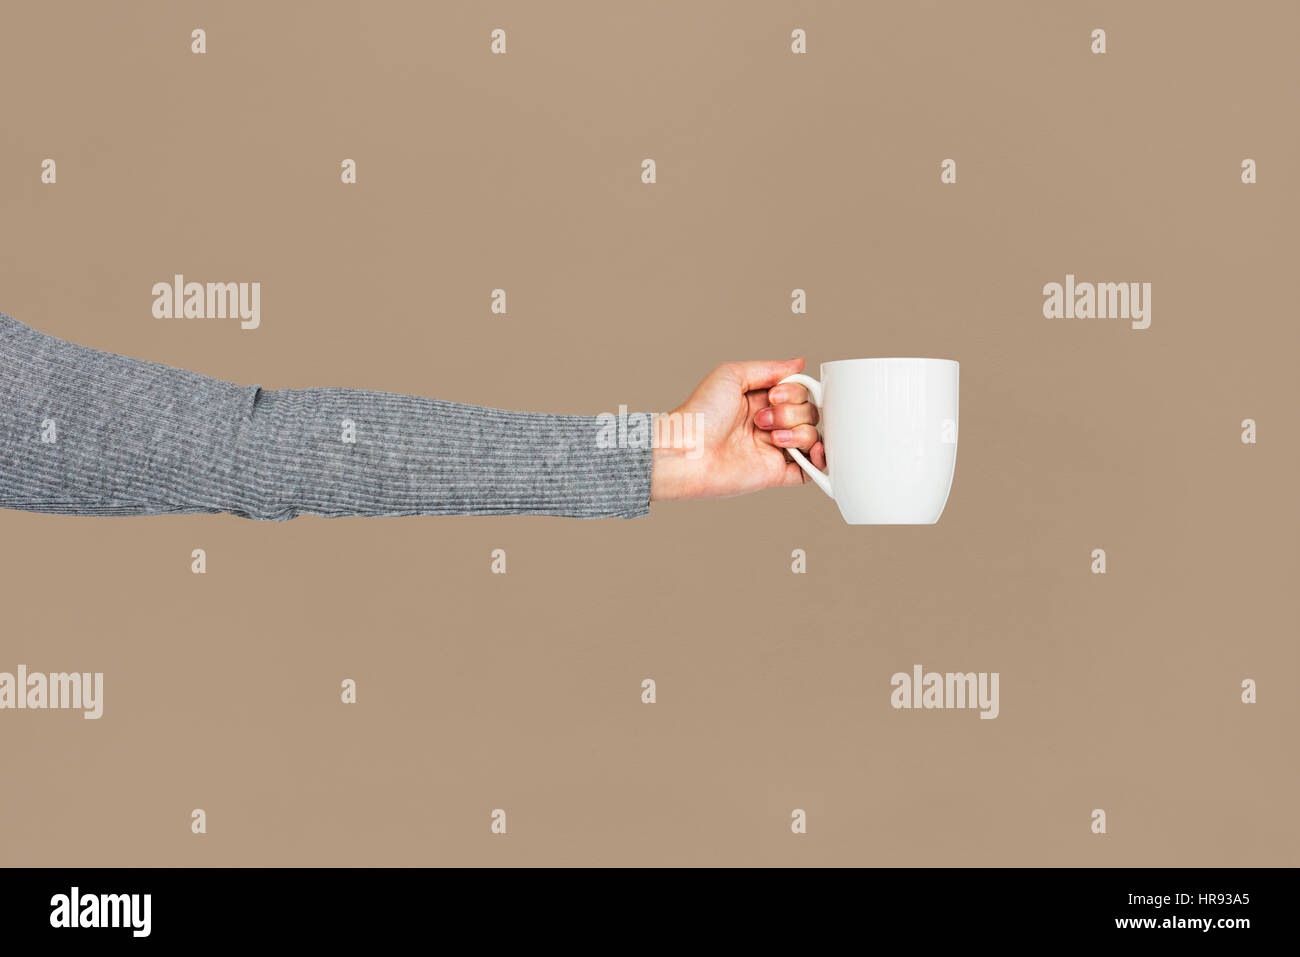 Coffee Tea Cup Studio Concept Stock Photo